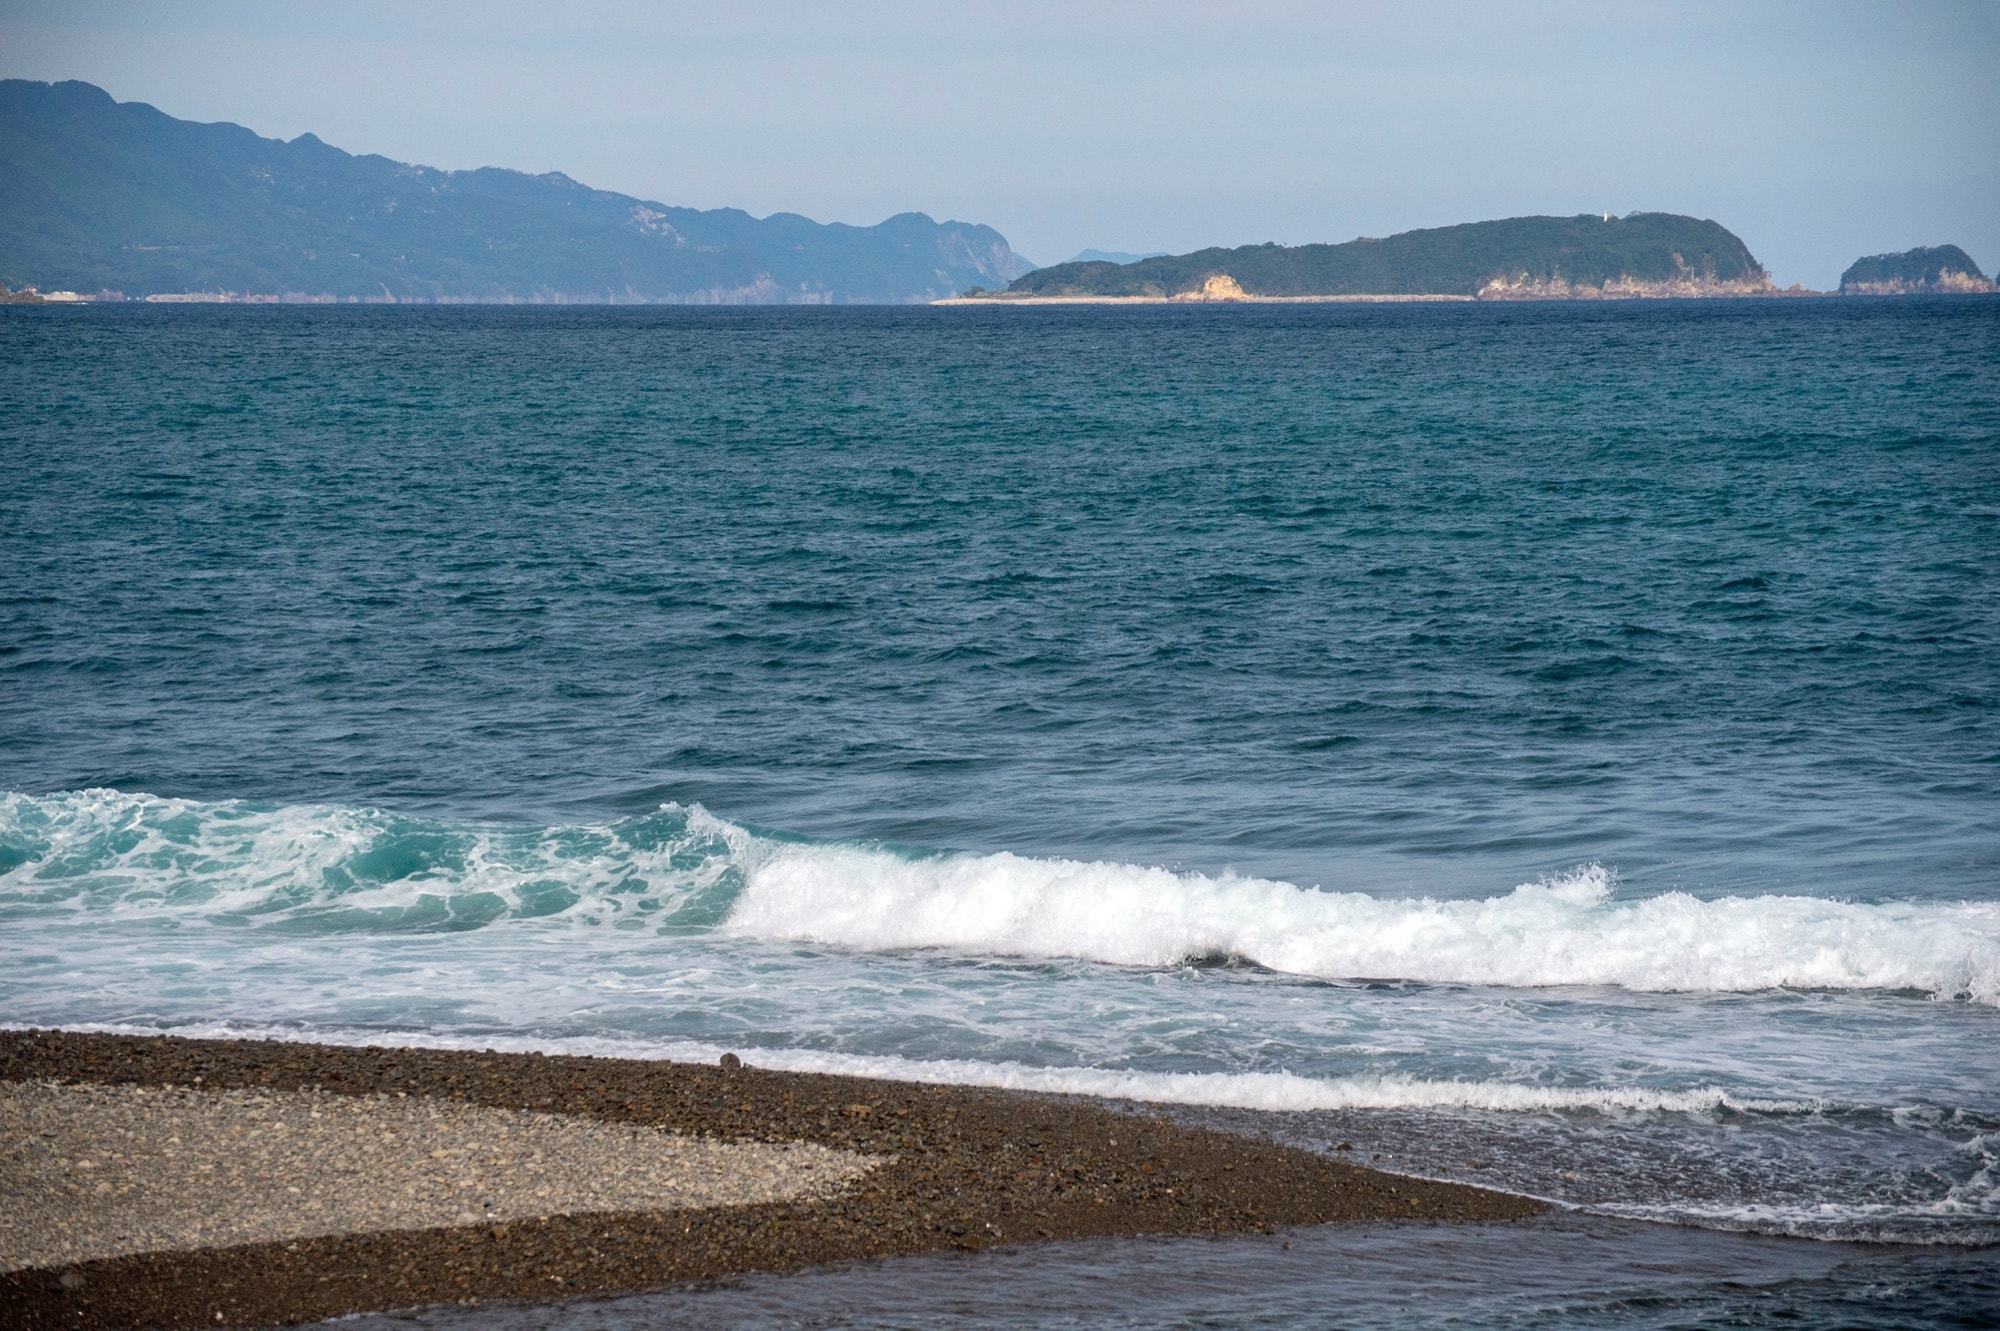 Uターン、Iターンを目指す方へ。徳島で今人気のサーフィン移住、ノマド移住